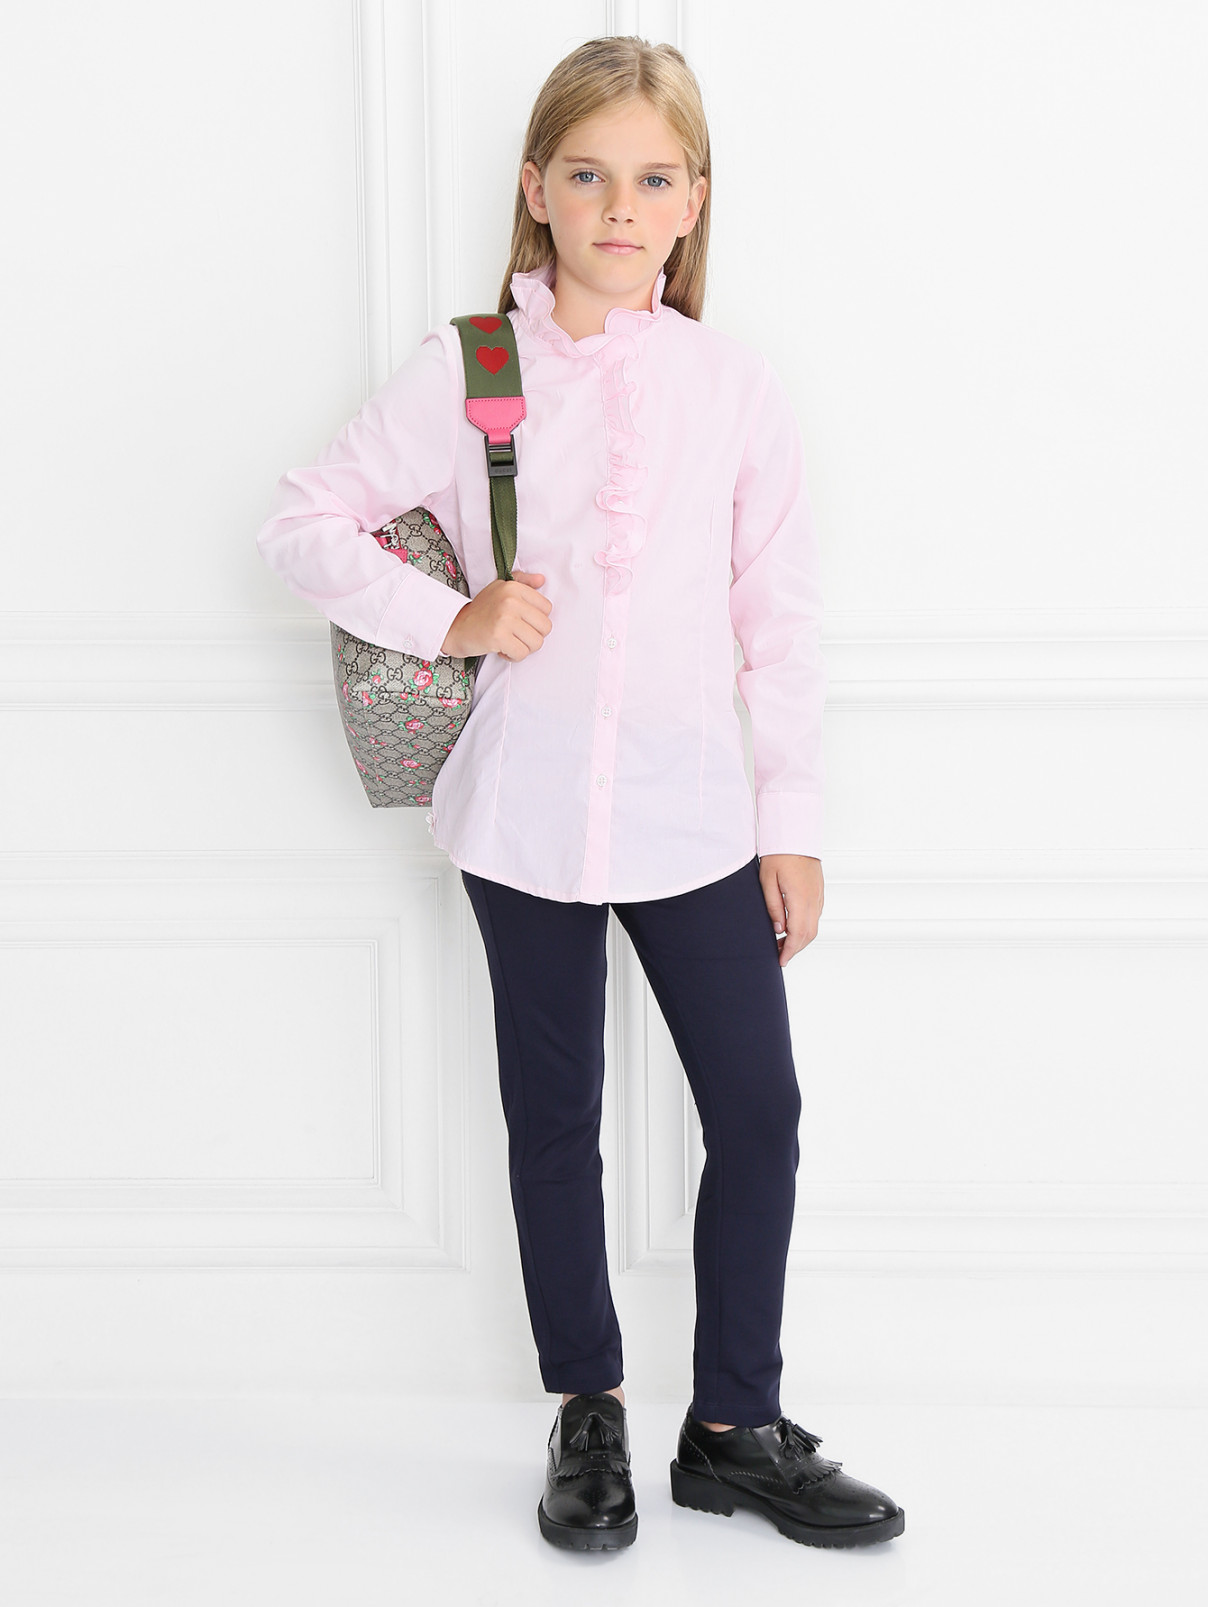 Трикотажные брюки на резинке Aletta Couture  –  Модель Общий вид  – Цвет:  Синий